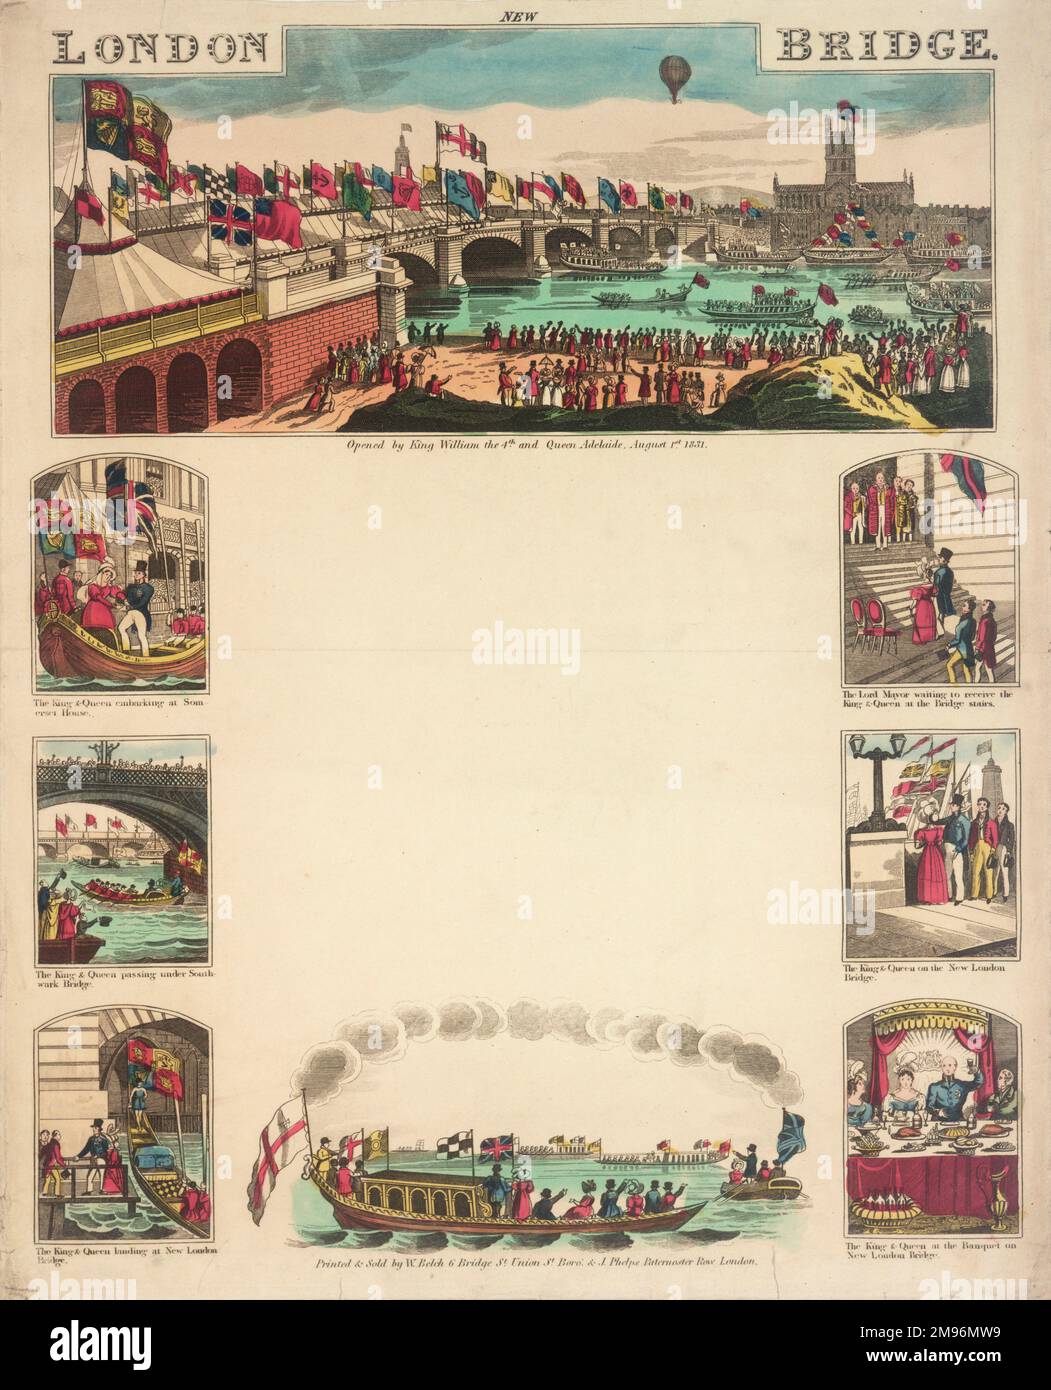 Eine Reihe von farbigen Zeichnungen, die die Eröffnung der New London Bridge von König William IV. Und Königin Adelaide zeigen. Stockfoto